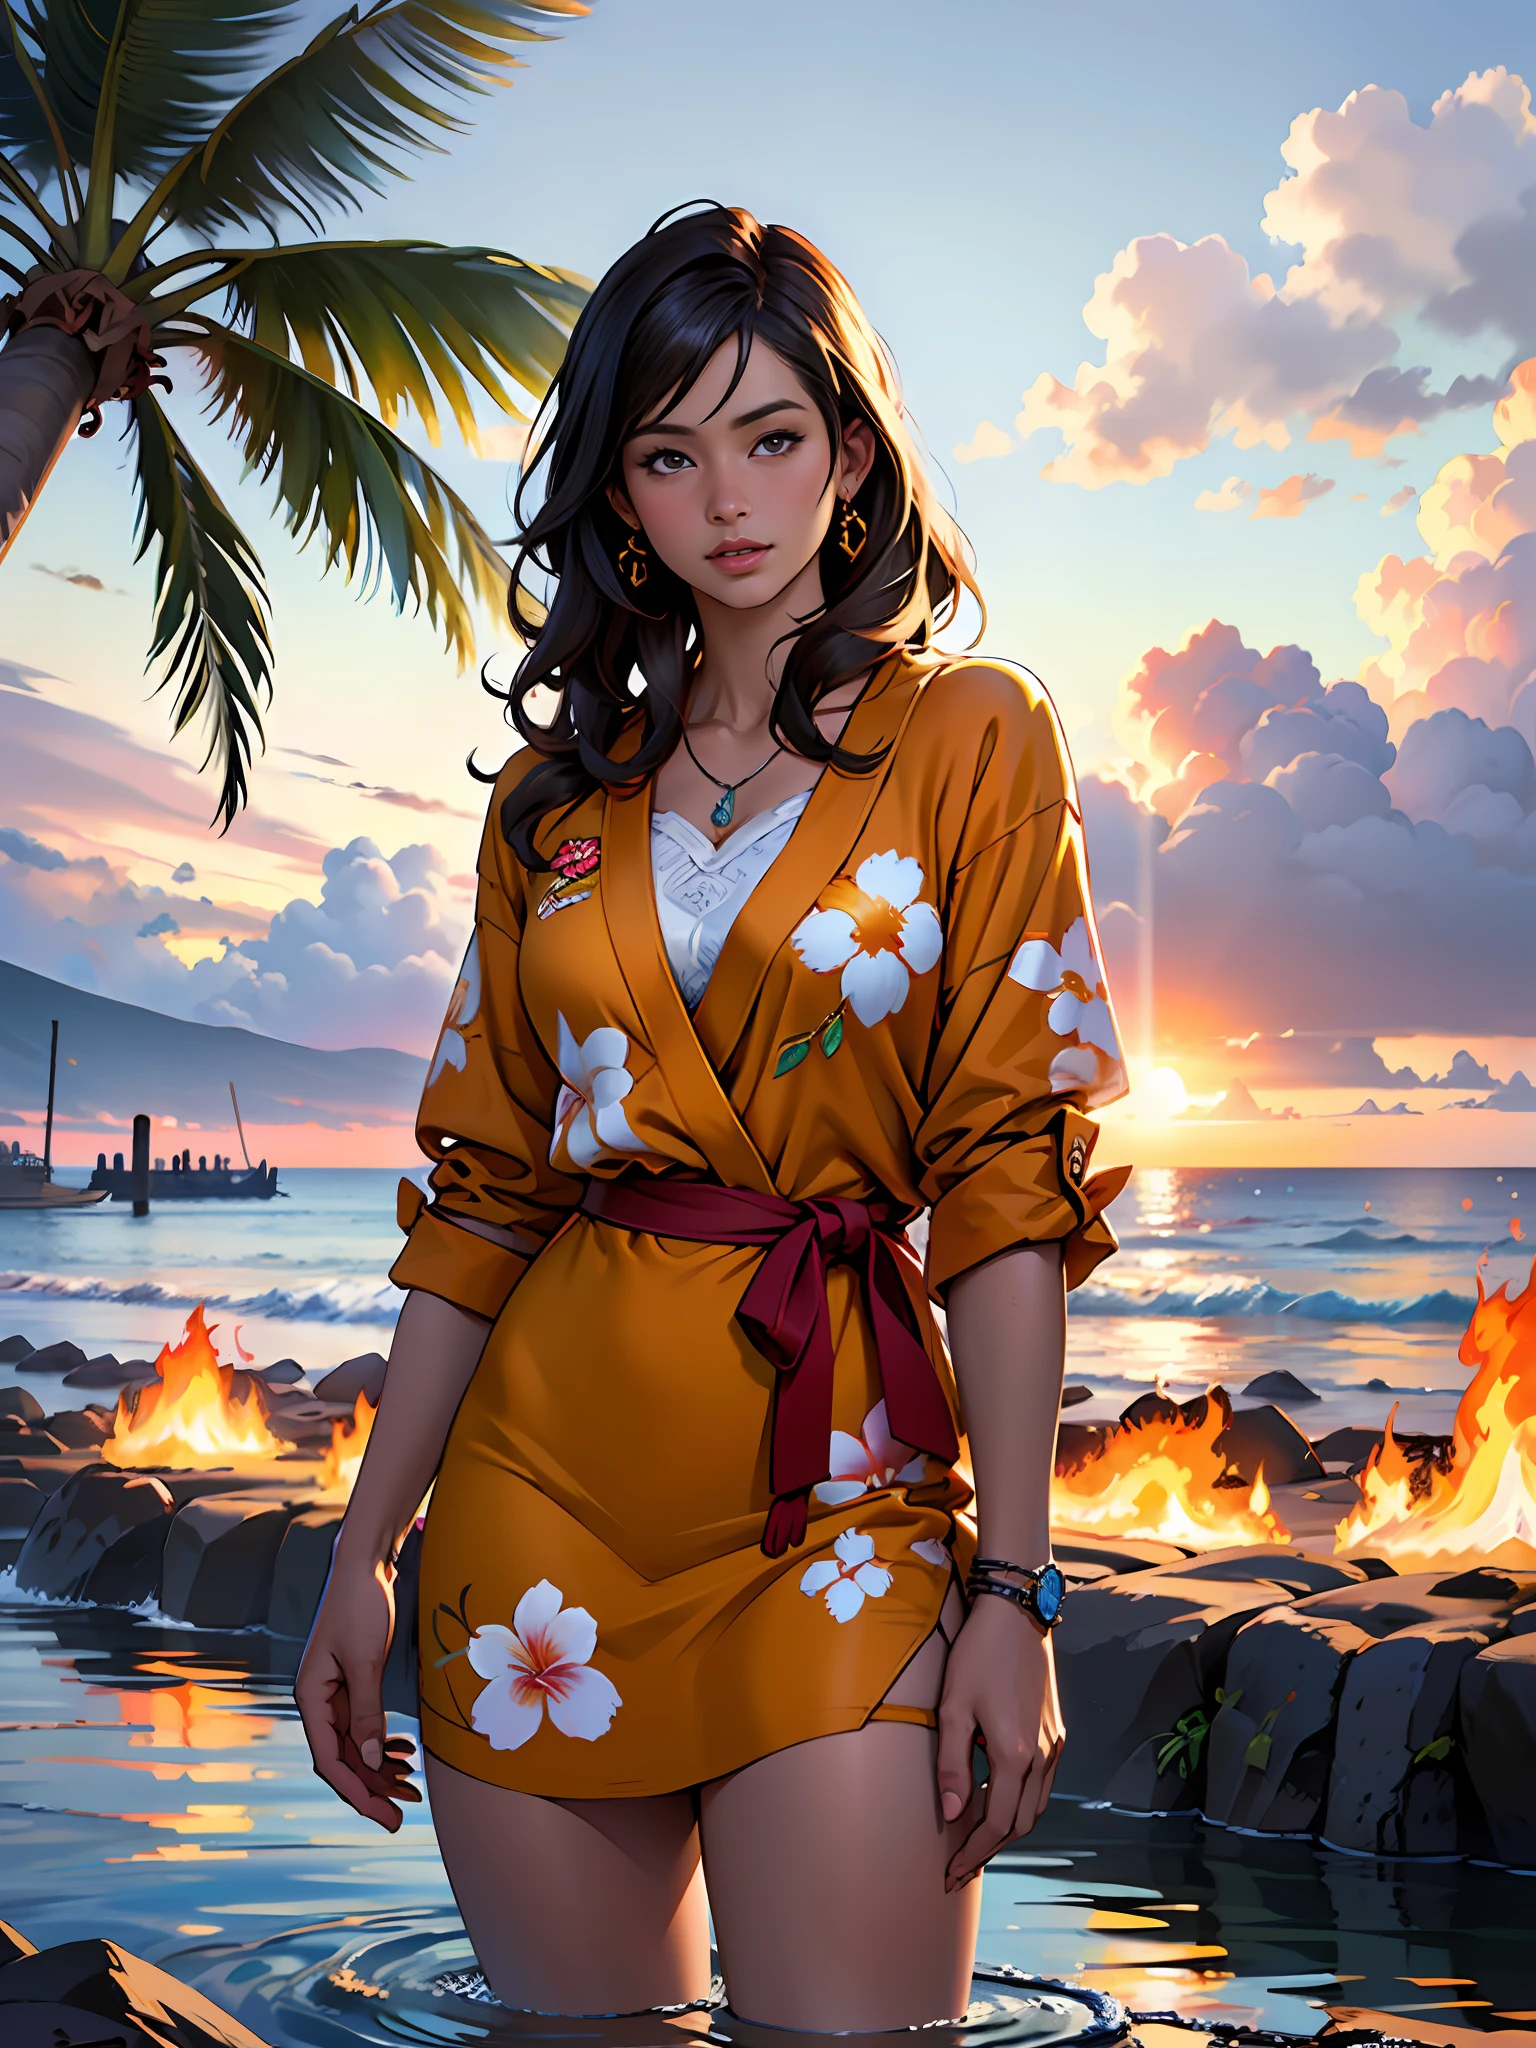 하와이 라하이나 뒤에서 불이 타오르고 있다, 물가에서 그림을 그리는 소녀 1명, Jaime Frias의 스타일, 최고의 품질, 현실적인, 수상 경력이 있는 컬러 일러스트레이션, (복잡한 디테일: 1.2), (미세한 디테일)